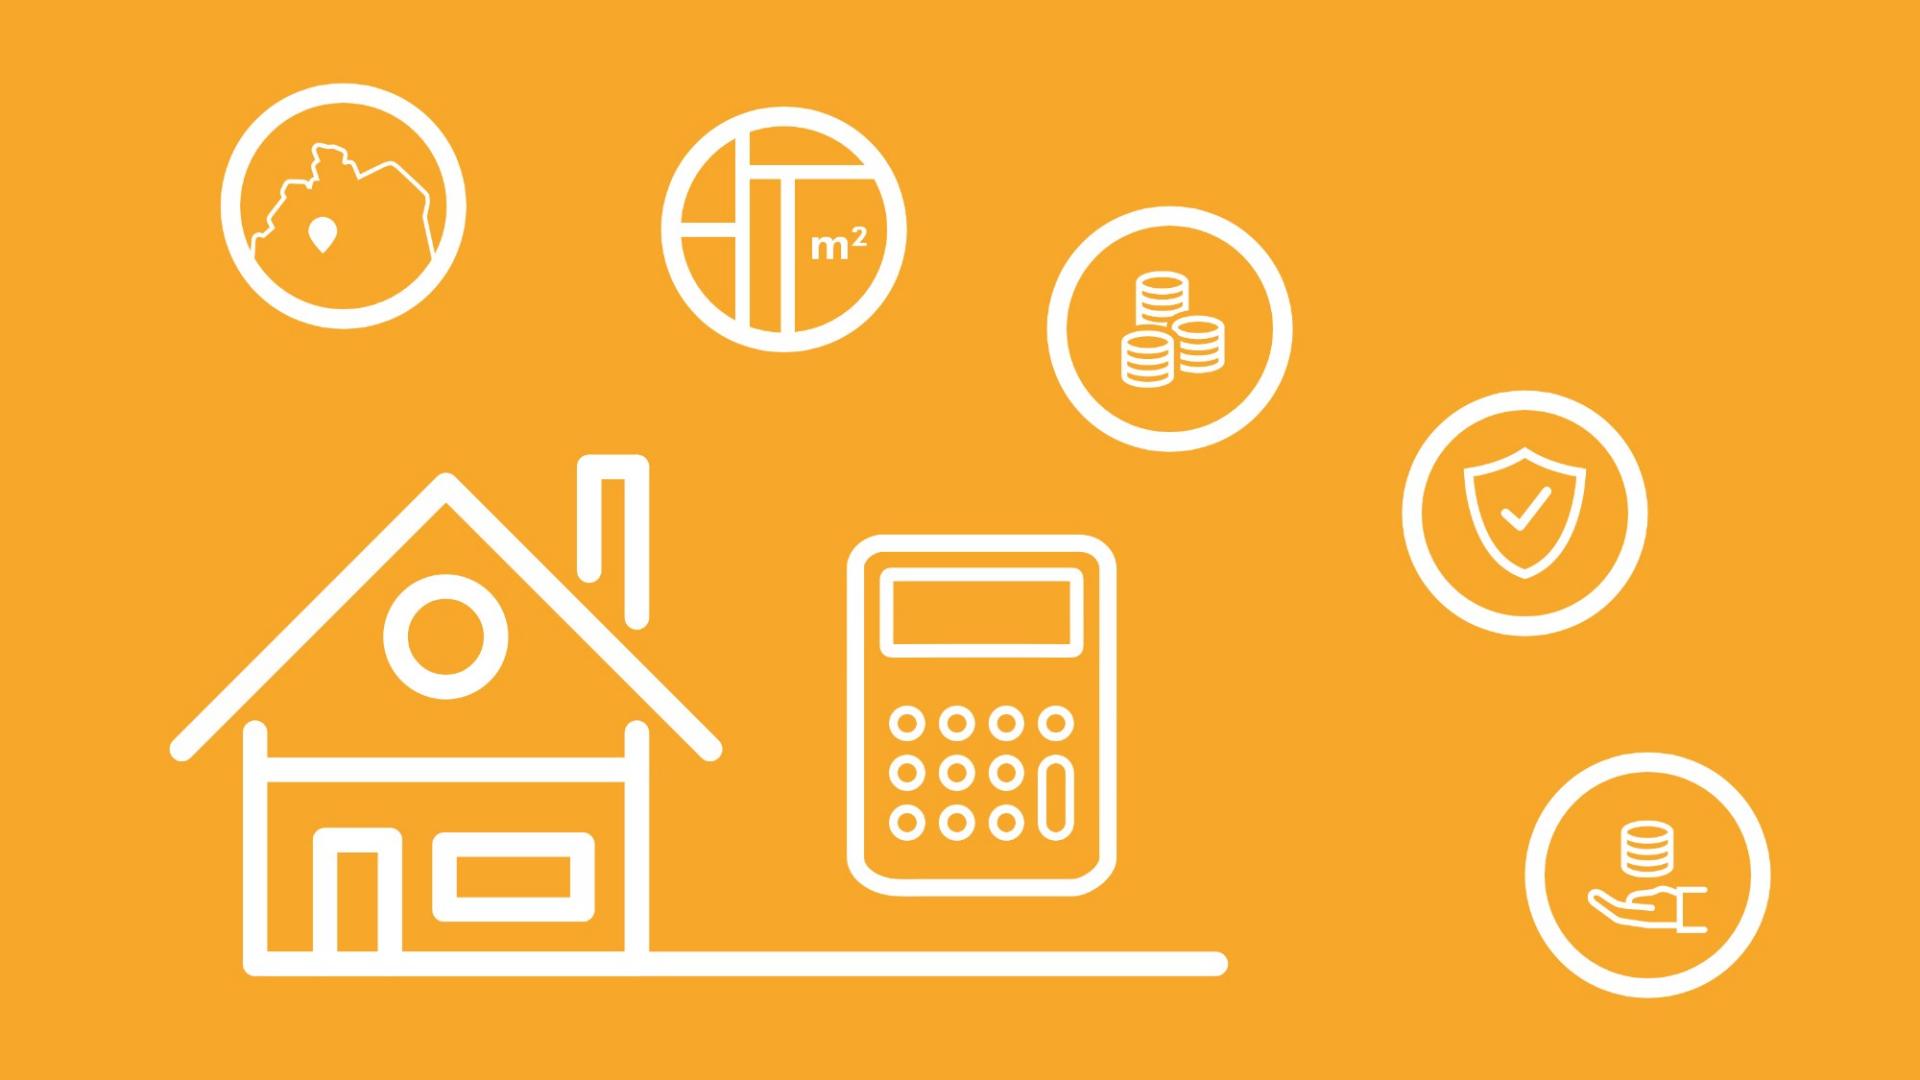 Um ein Haus und einen Rechner herum sind die Faktoren im Icon-Stil angeordnet, welche die Hausratversicherung Kosten beeinflussen.